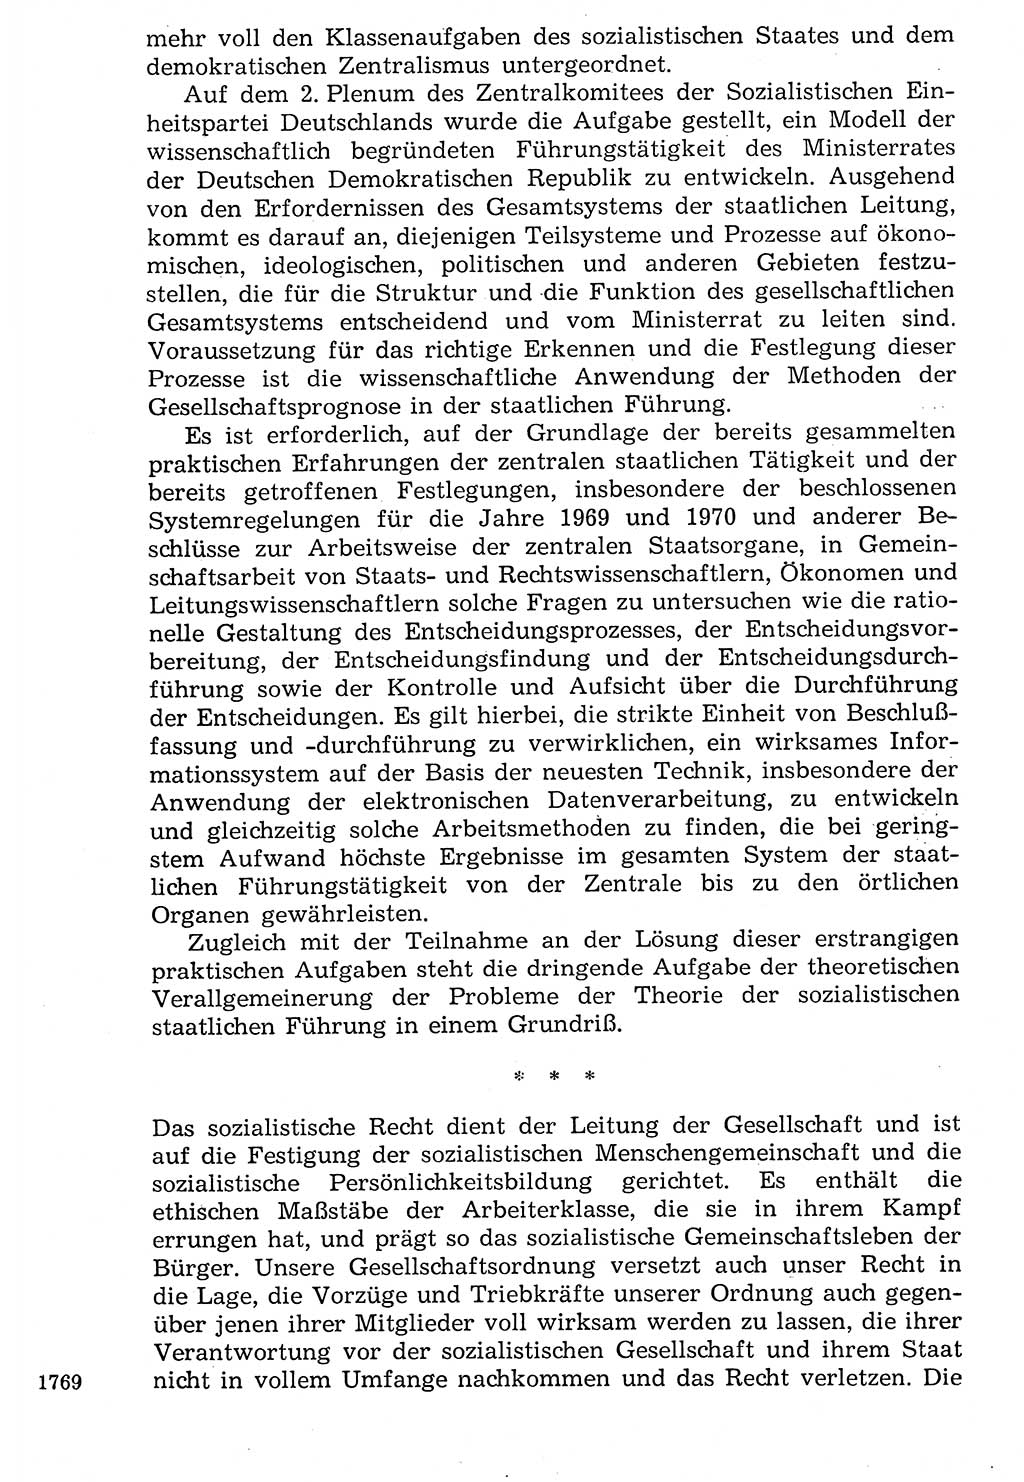 Staat und Recht (StuR), 17. Jahrgang [Deutsche Demokratische Republik (DDR)] 1968, Seite 1769 (StuR DDR 1968, S. 1769)